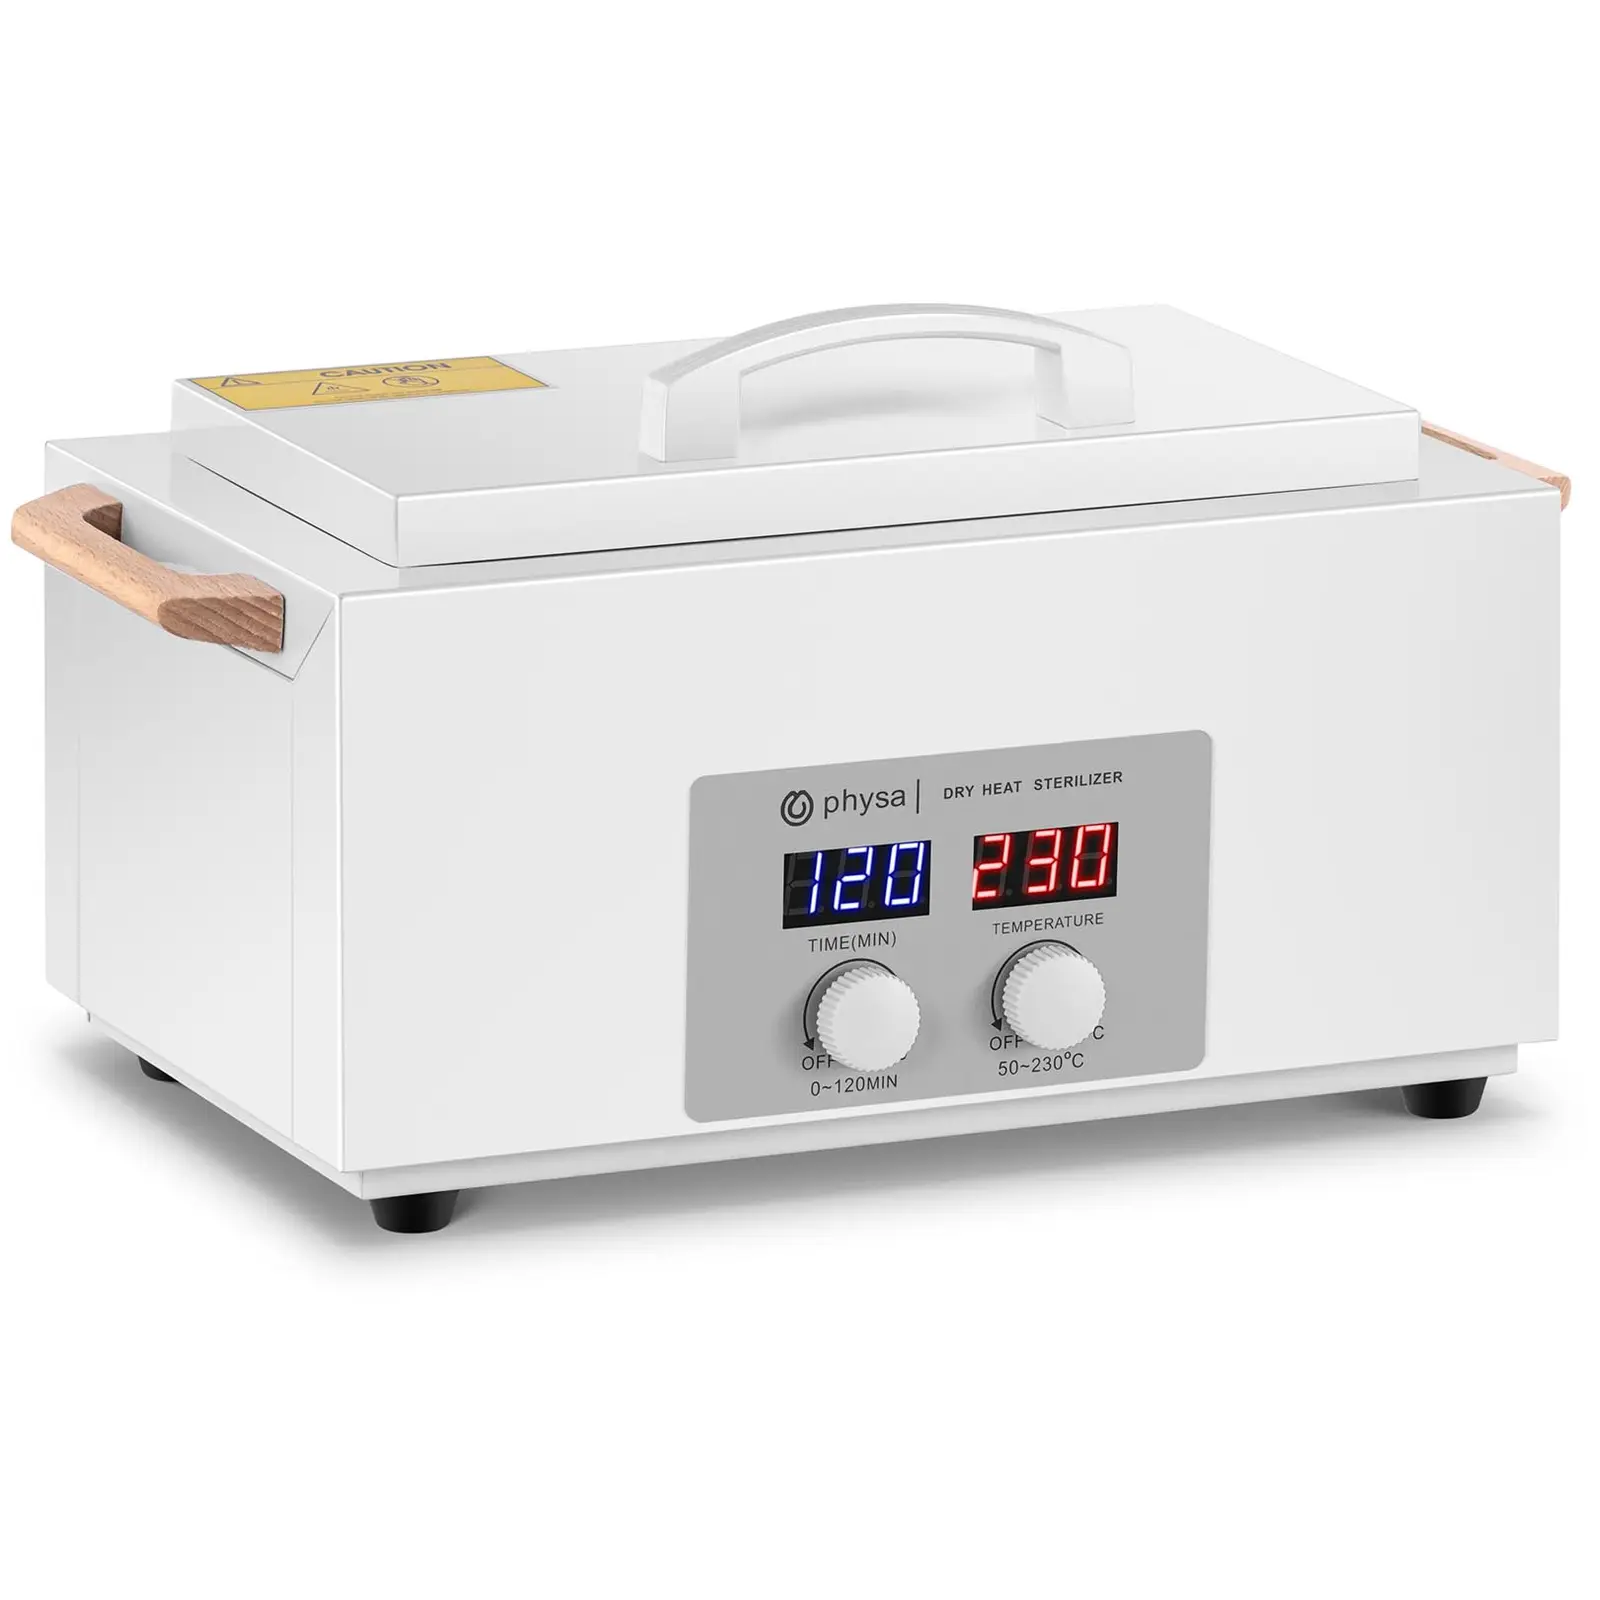 Sterilizzatore a secco professionale - 1,8 L - Timer - Da 50 a 230 °C